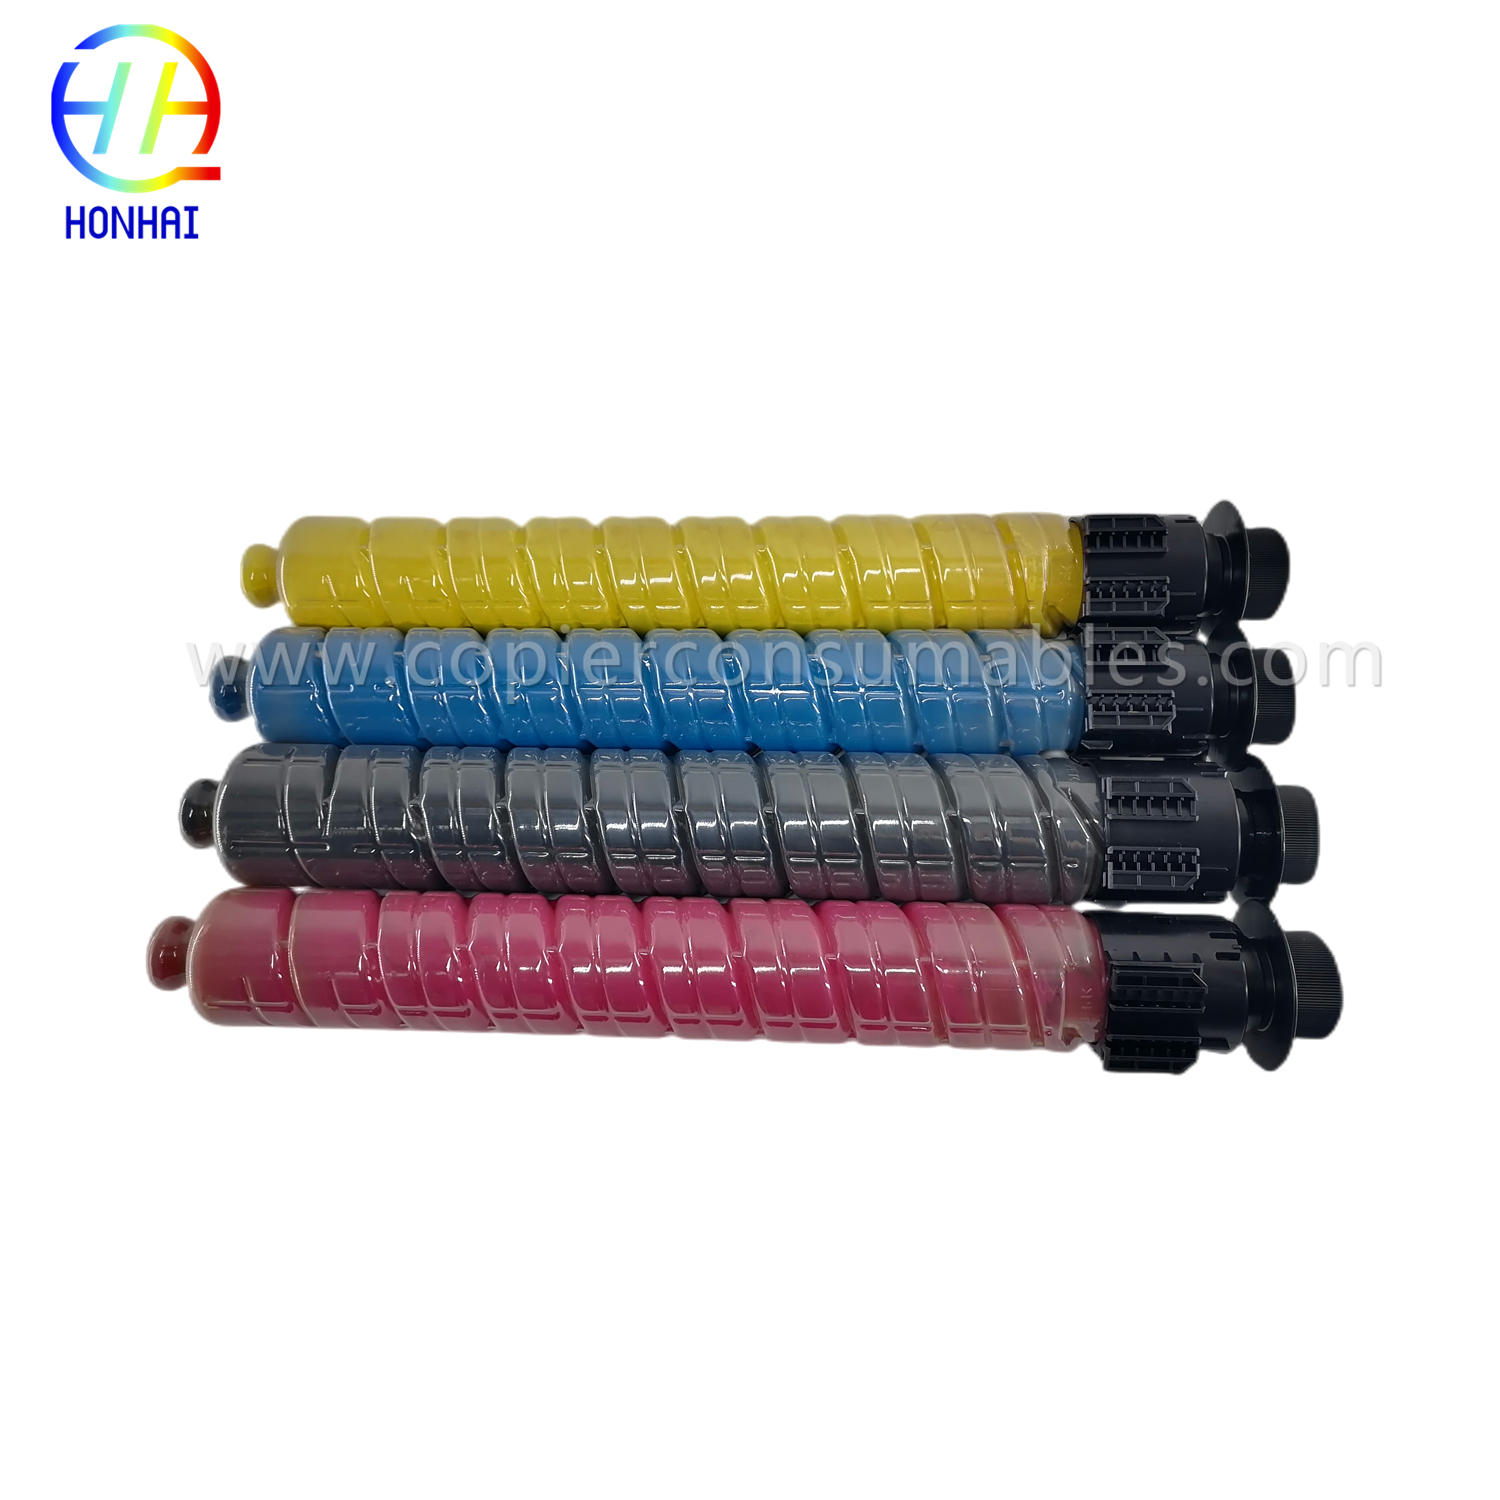 https://www.copierhonhaitech.com/toner-cartridges-set-cmyk-original-powder-for-ricoh-842257-842256-842255-842258-im-c3500-c3000-c3500-product/